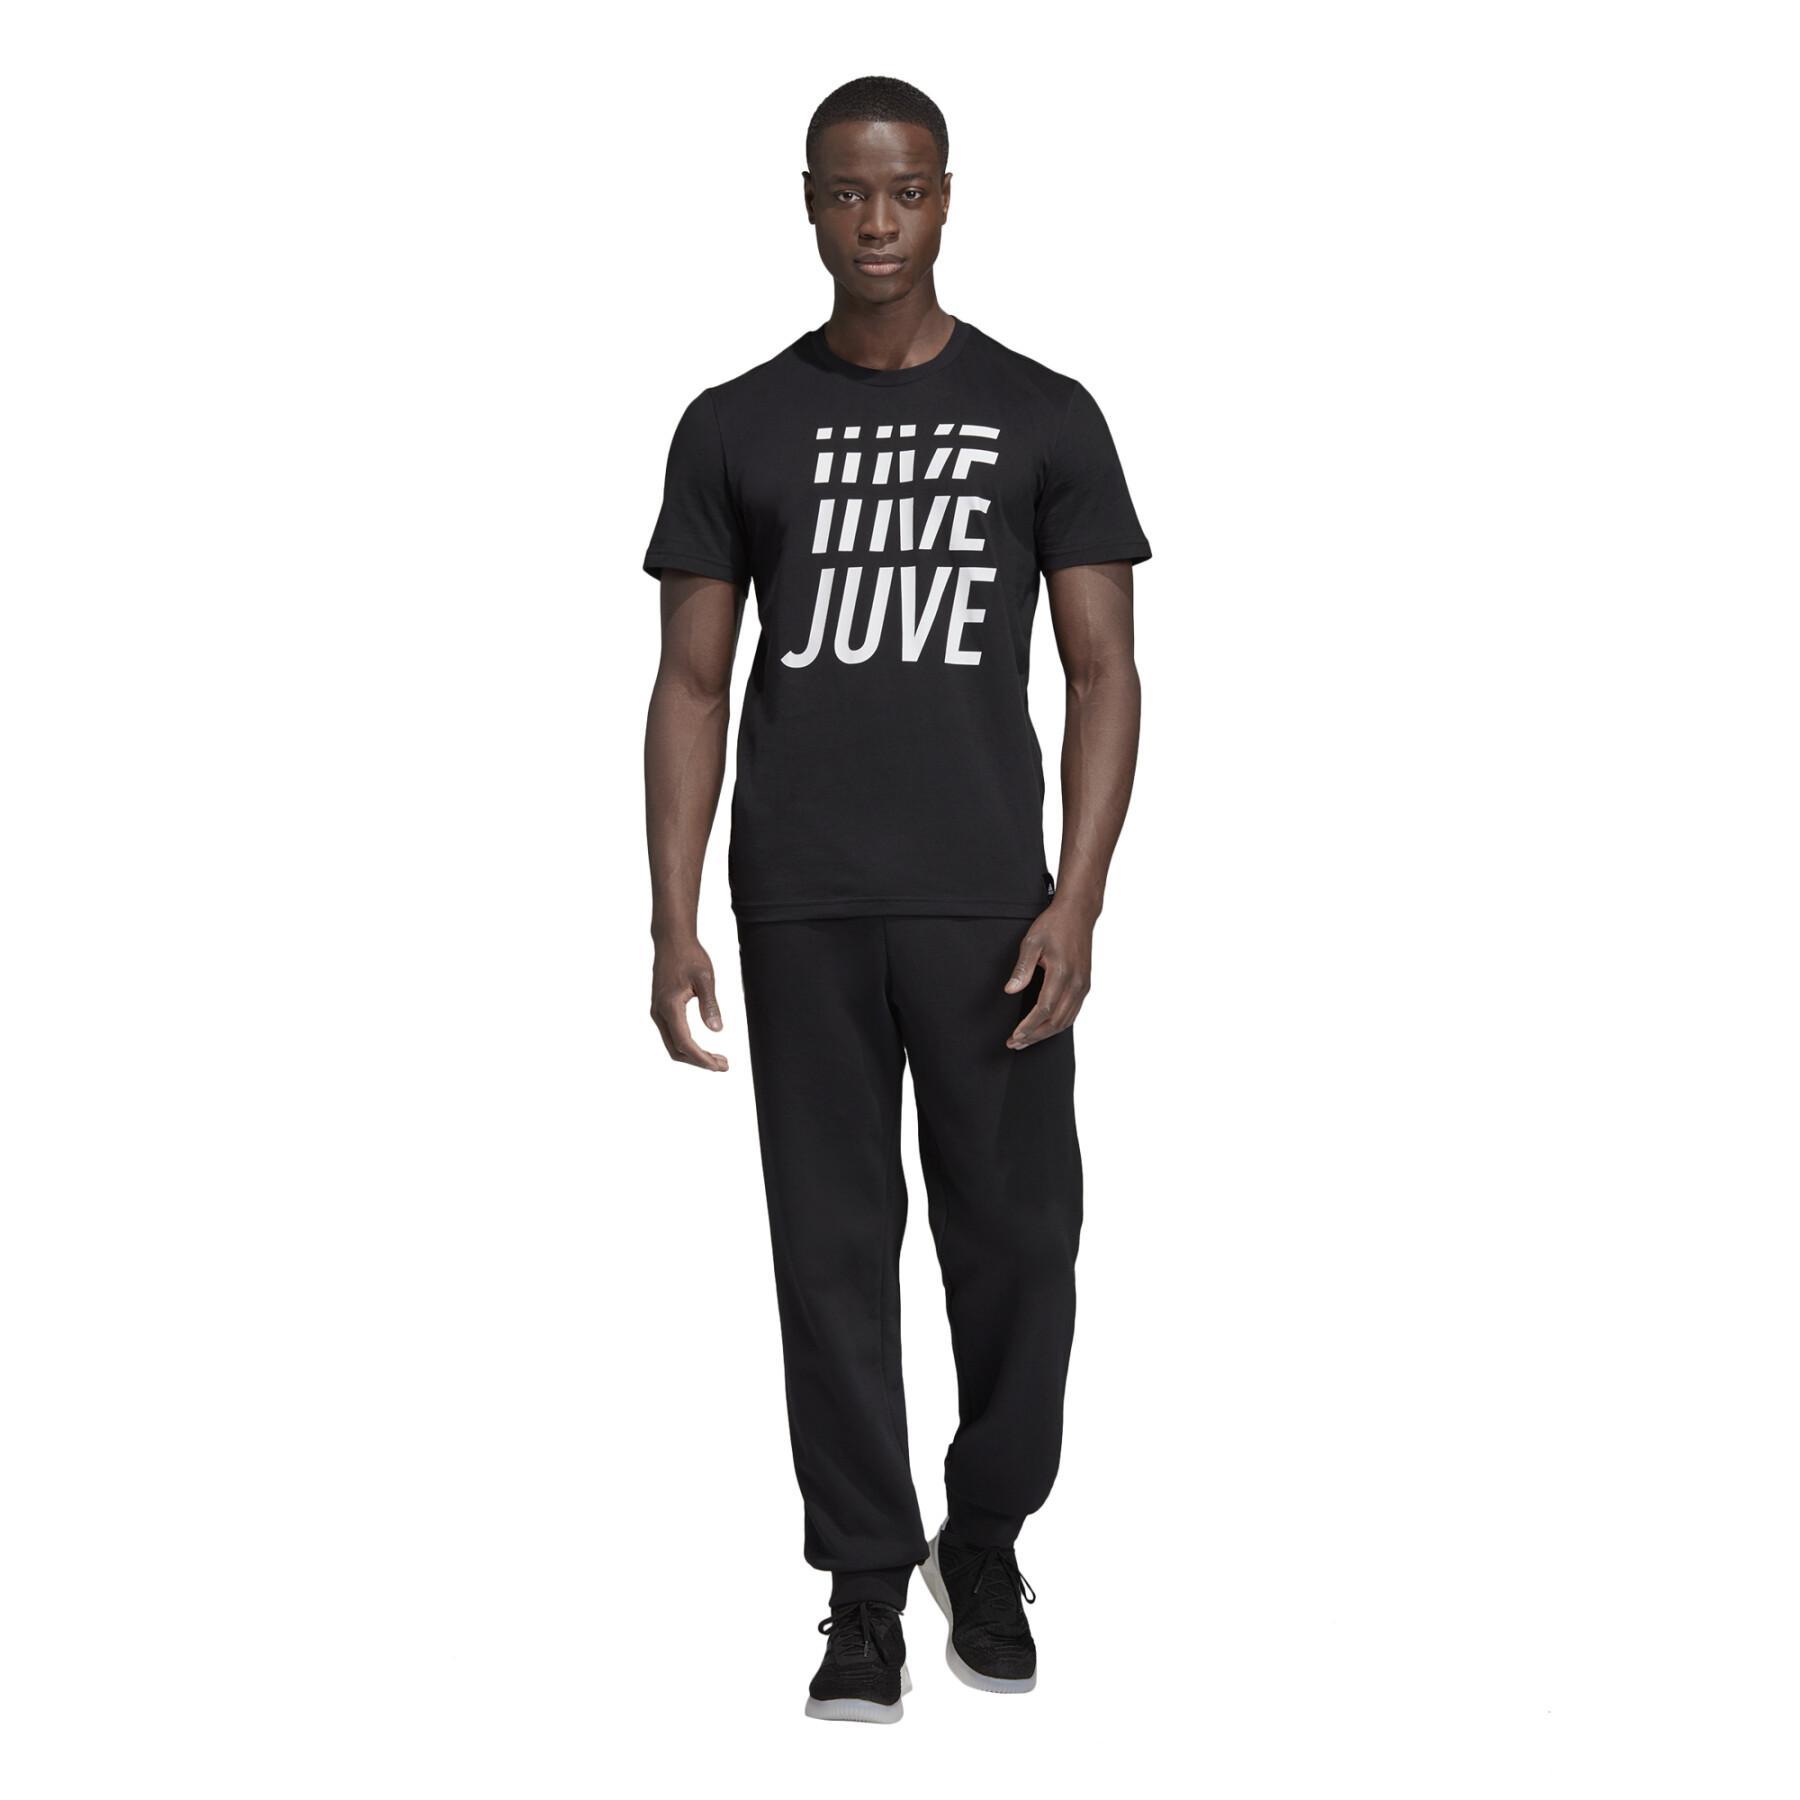 T-shirt Juventus DNA Graphic